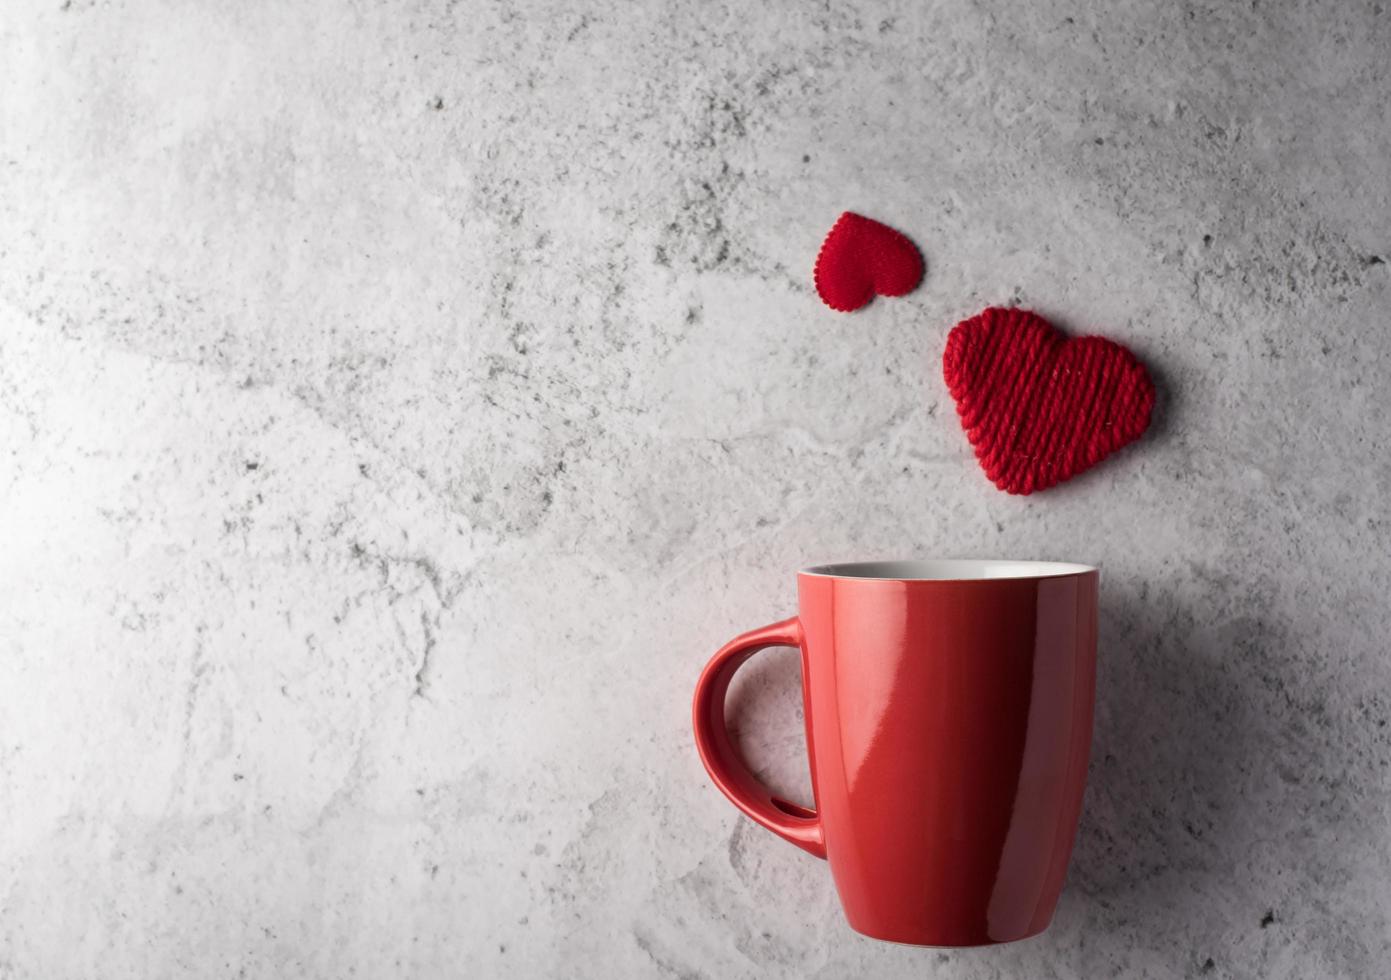 rode kop met hart, valentijnsdagconcept foto